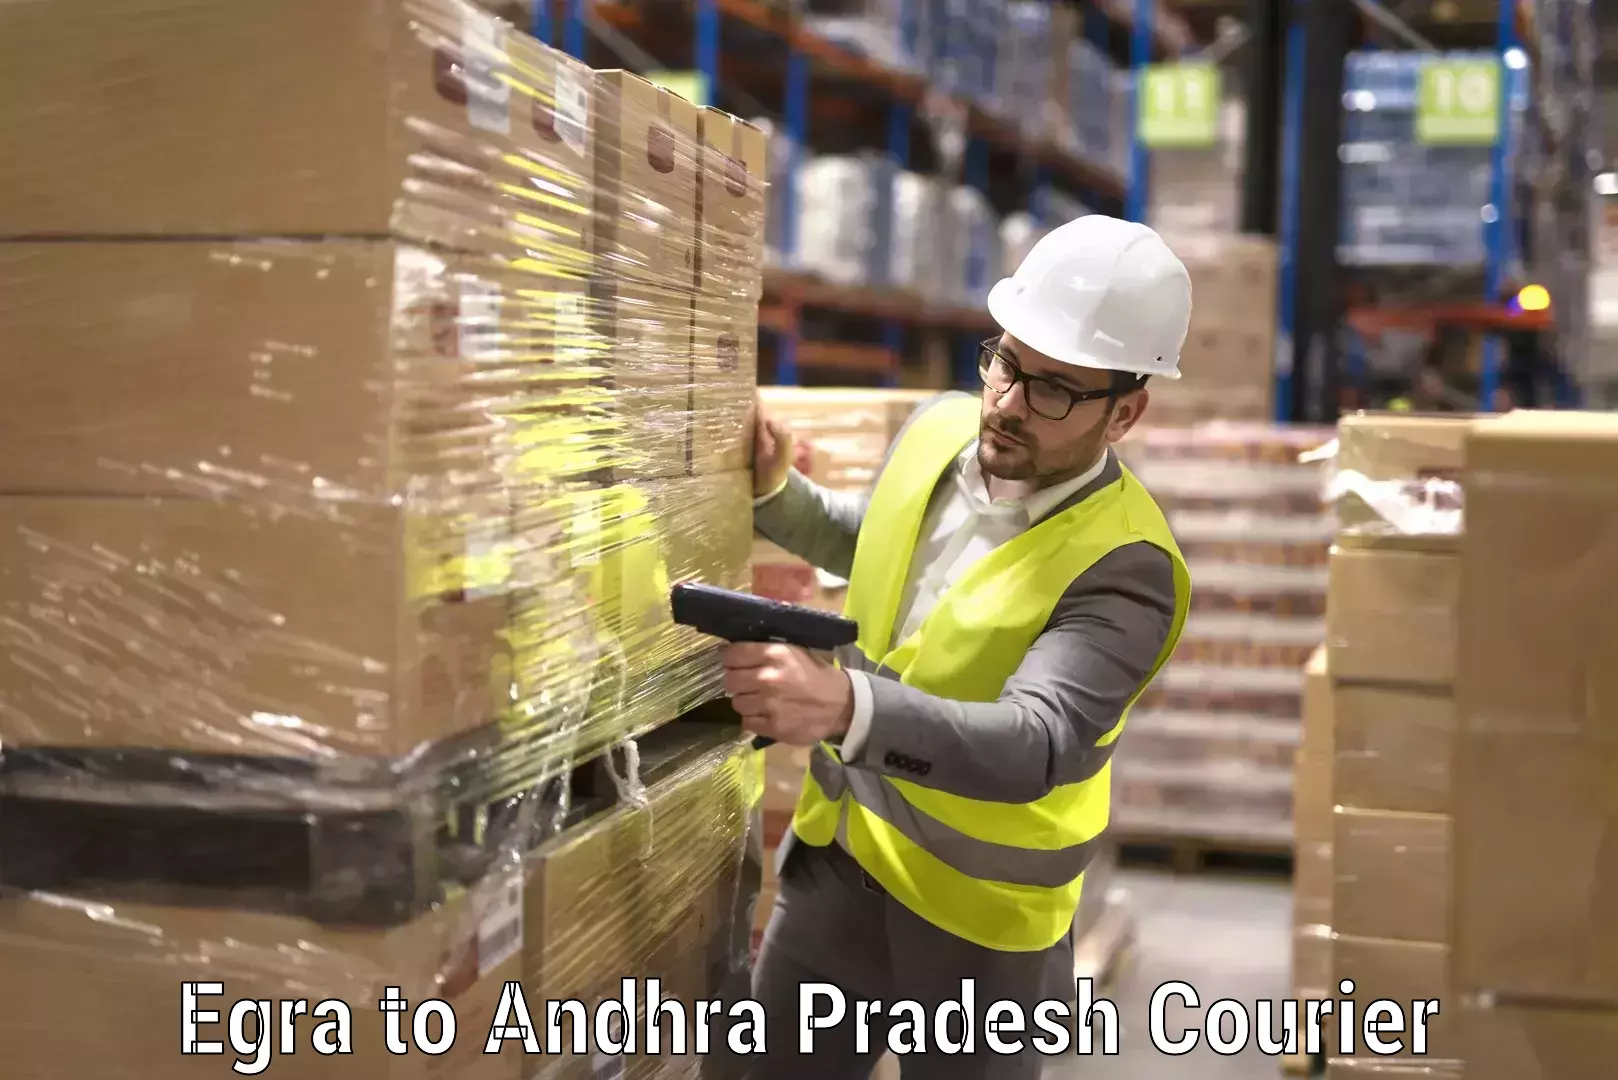 Specialized moving company Egra to Andhra Pradesh